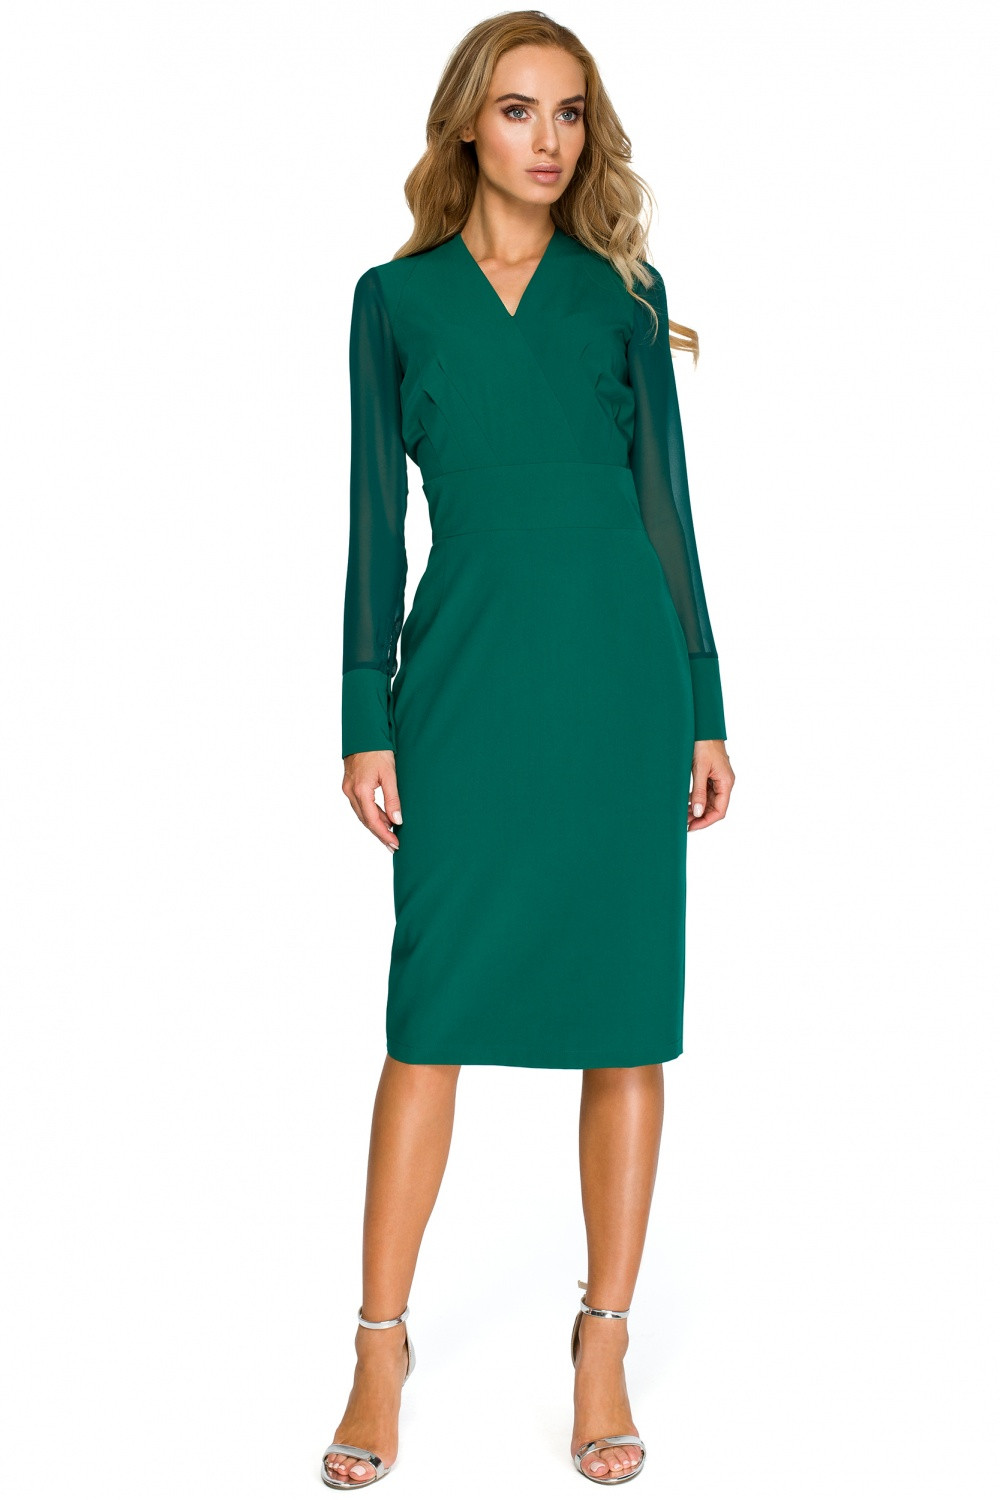 Dámské šaty S136 - Stylove tmavě zelená XXL-44